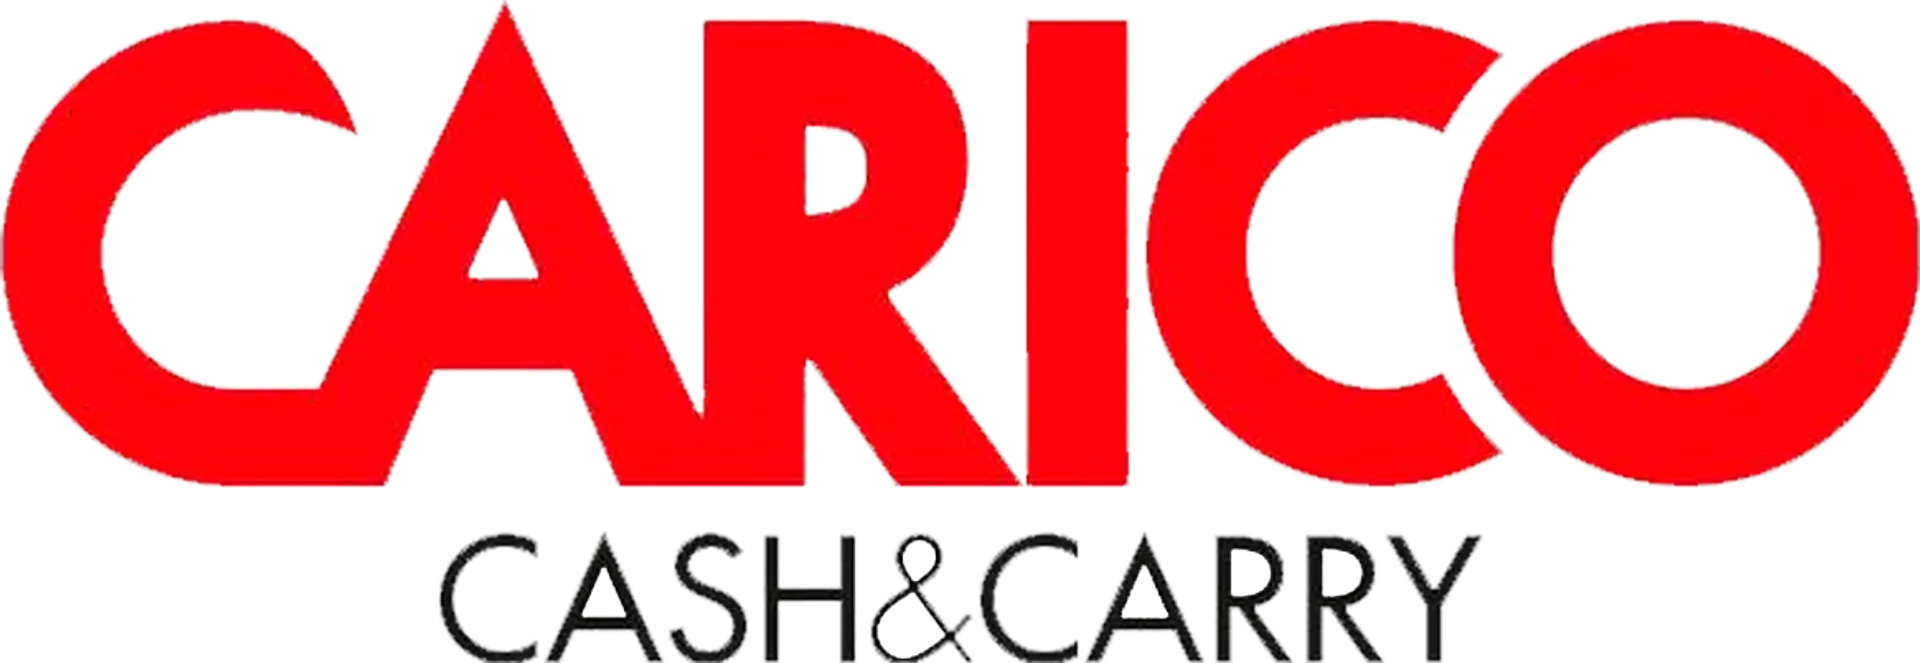 CARICO CASH & CARRY logo